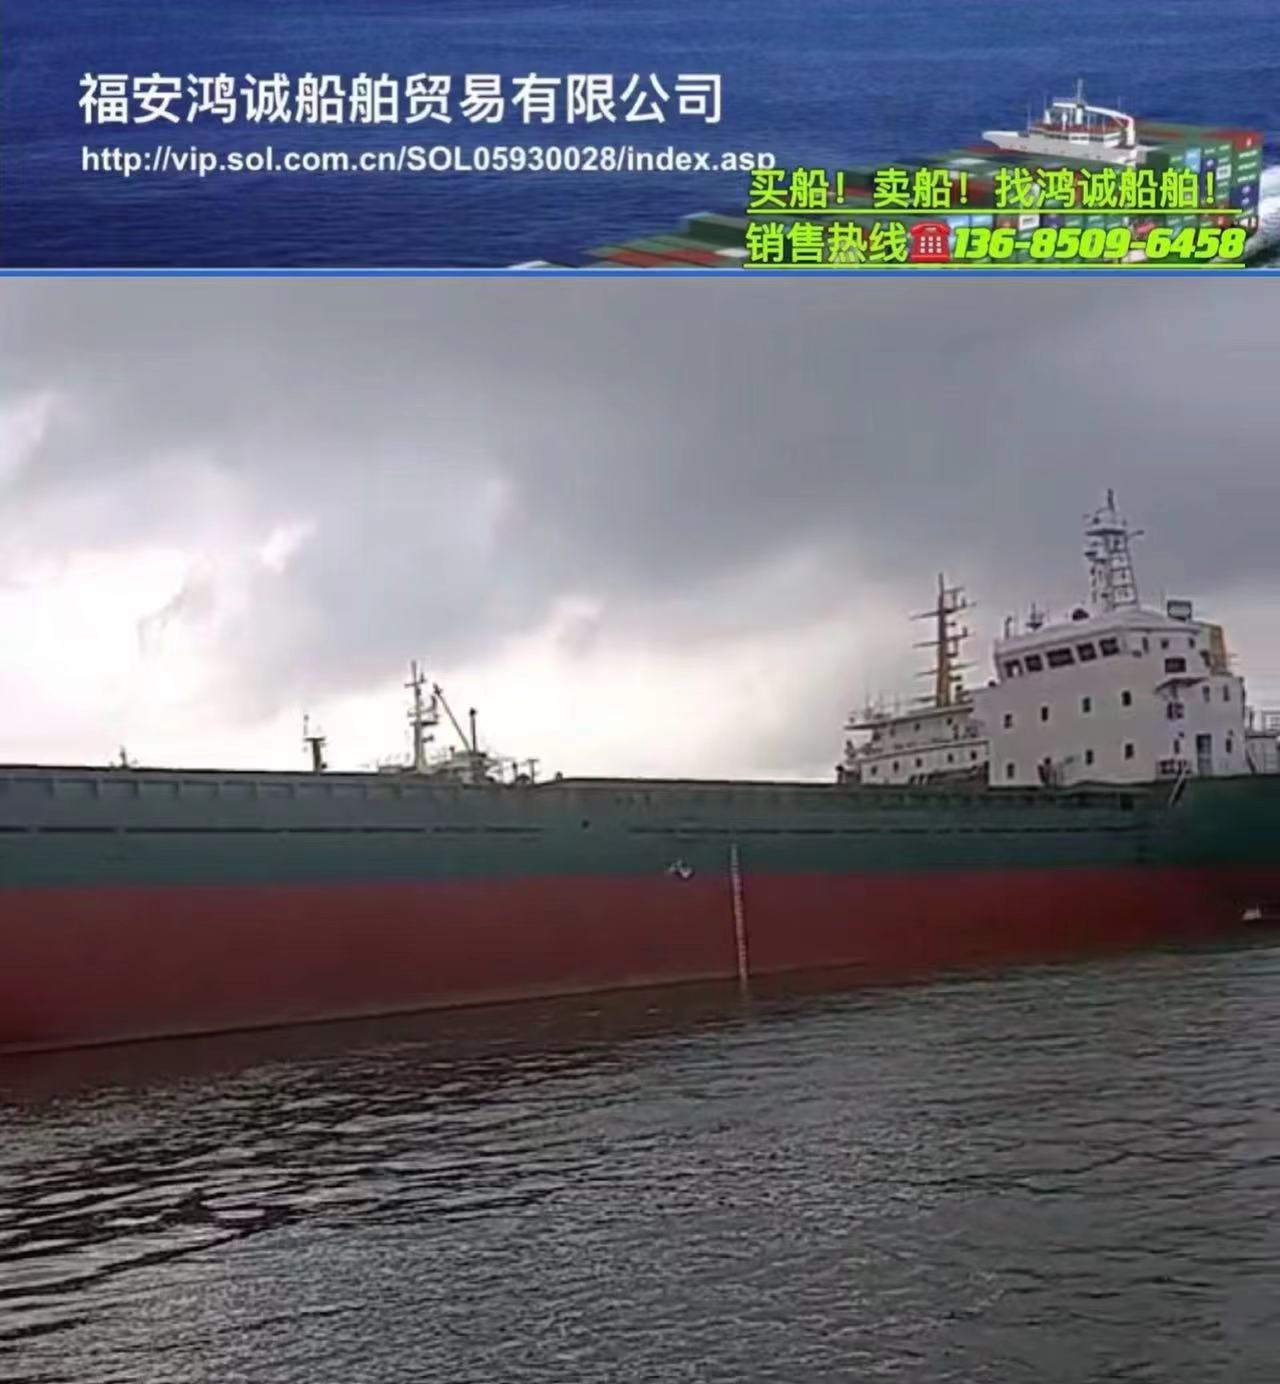 低价出售4000吨干货船 2002年8月浙江台州建造/